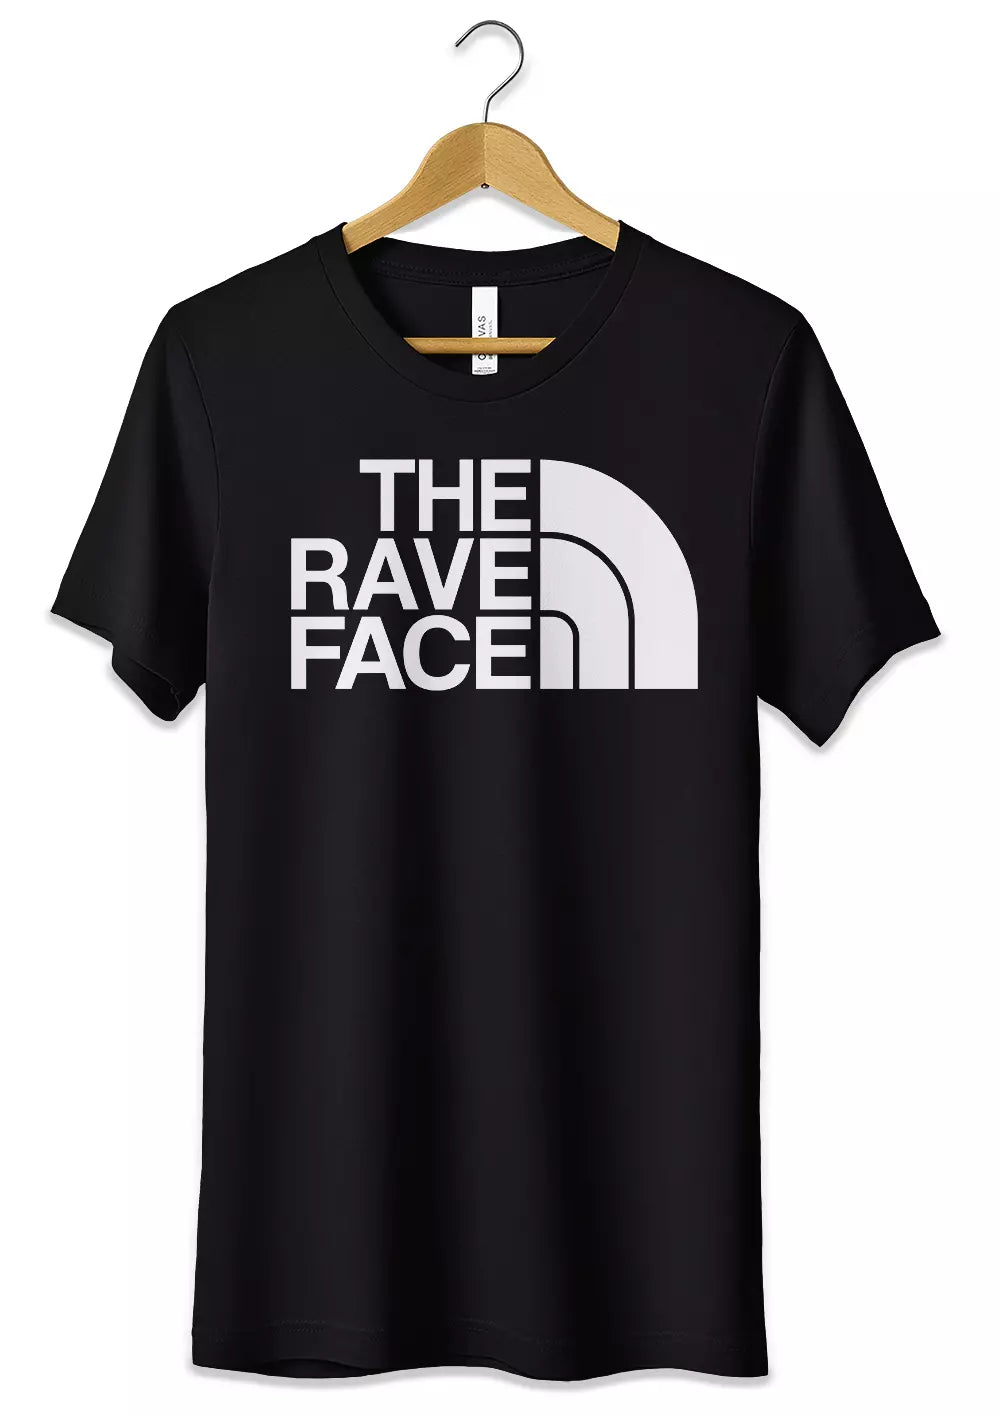 T-Shirt The Rave Face Maglietta Personalizzata Raver, CmrDesignStore, T-Shirt, t-shirt-the-rave-face-maglietta-personalizzata-raver, CmrDesignStore